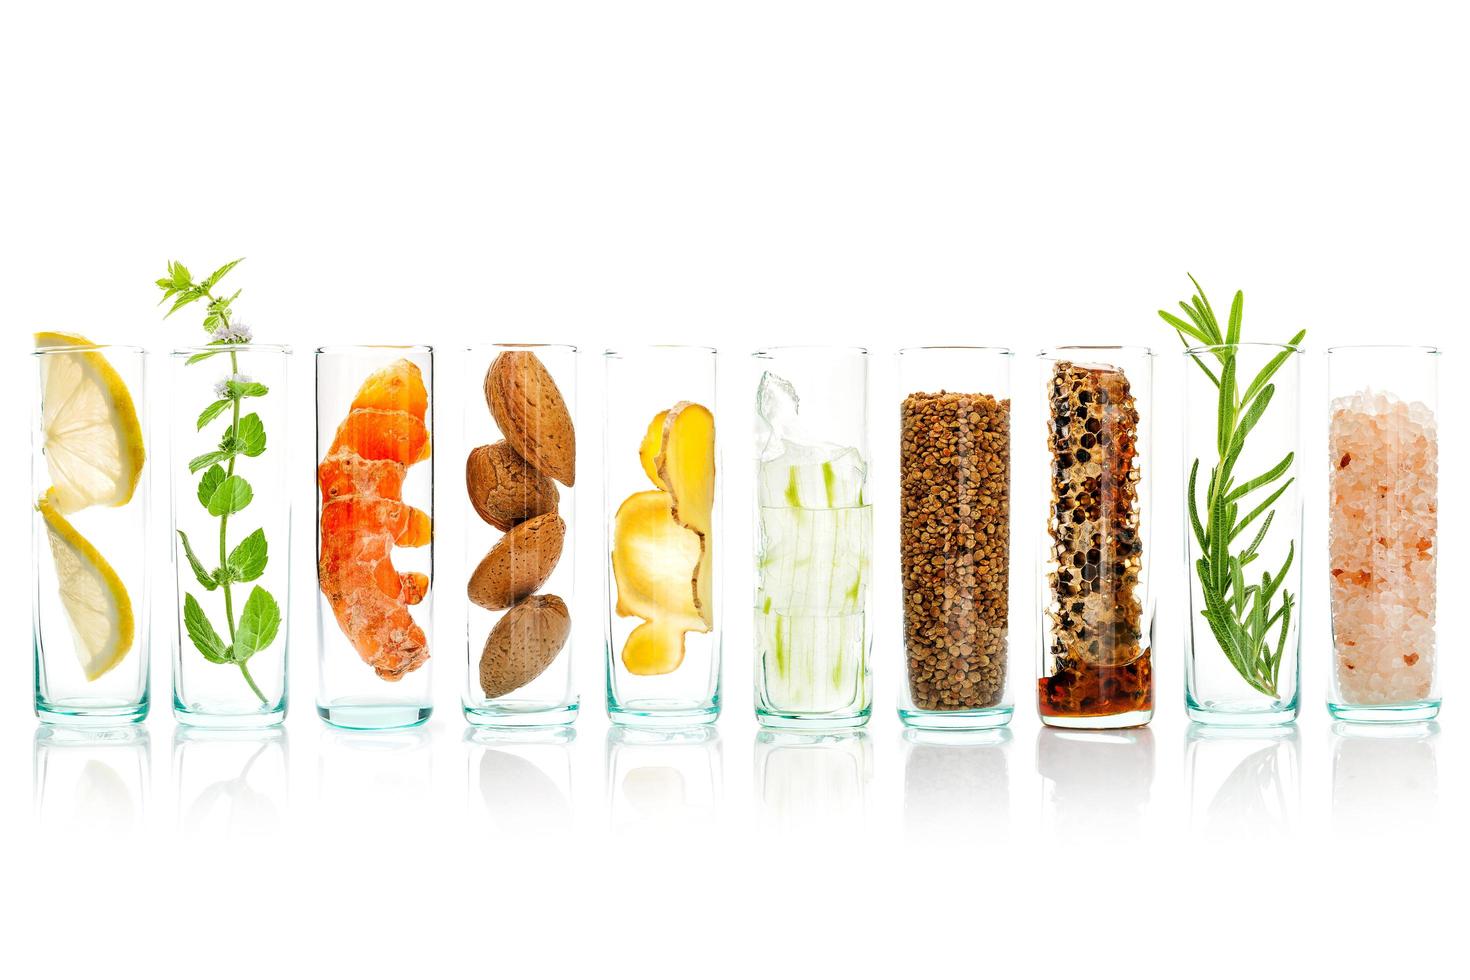 ingrédients naturels dans des bocaux en verre photo